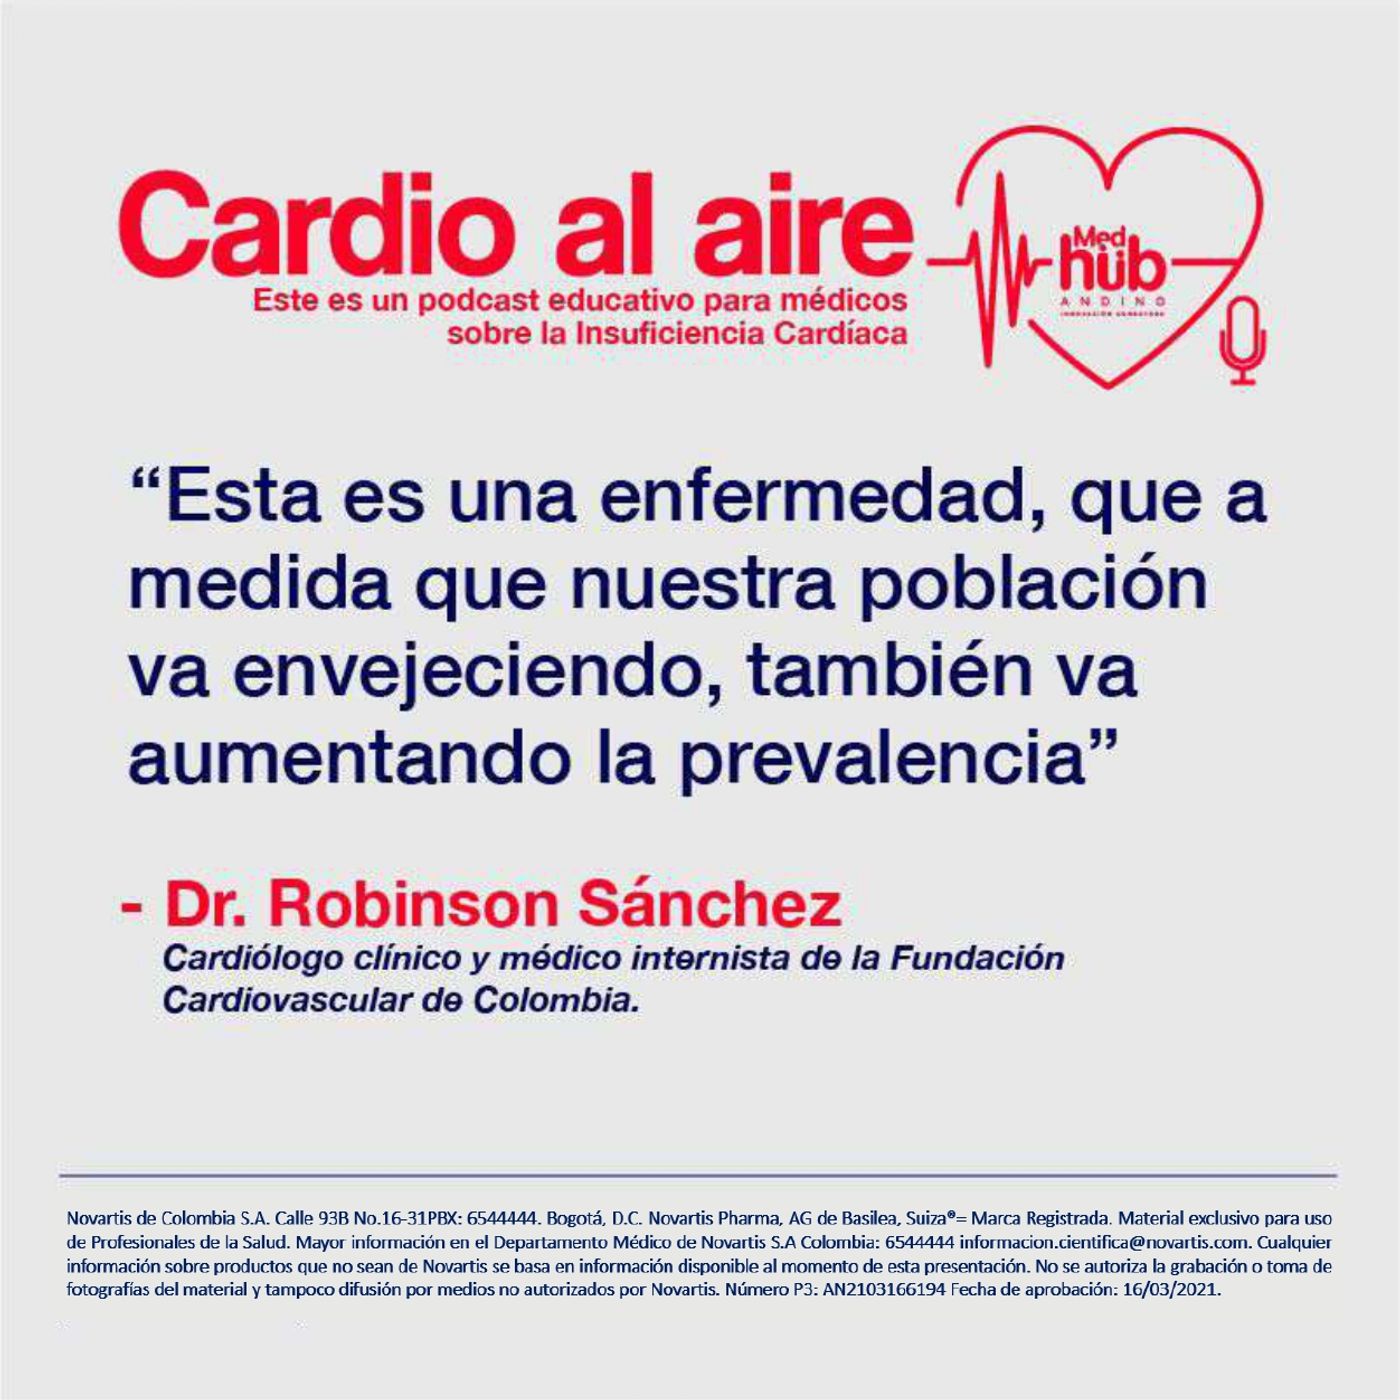 EP 3. Cardio al Aire: ¿Cómo se diagnostica IC? Con el Dr. Robinson Sánchez